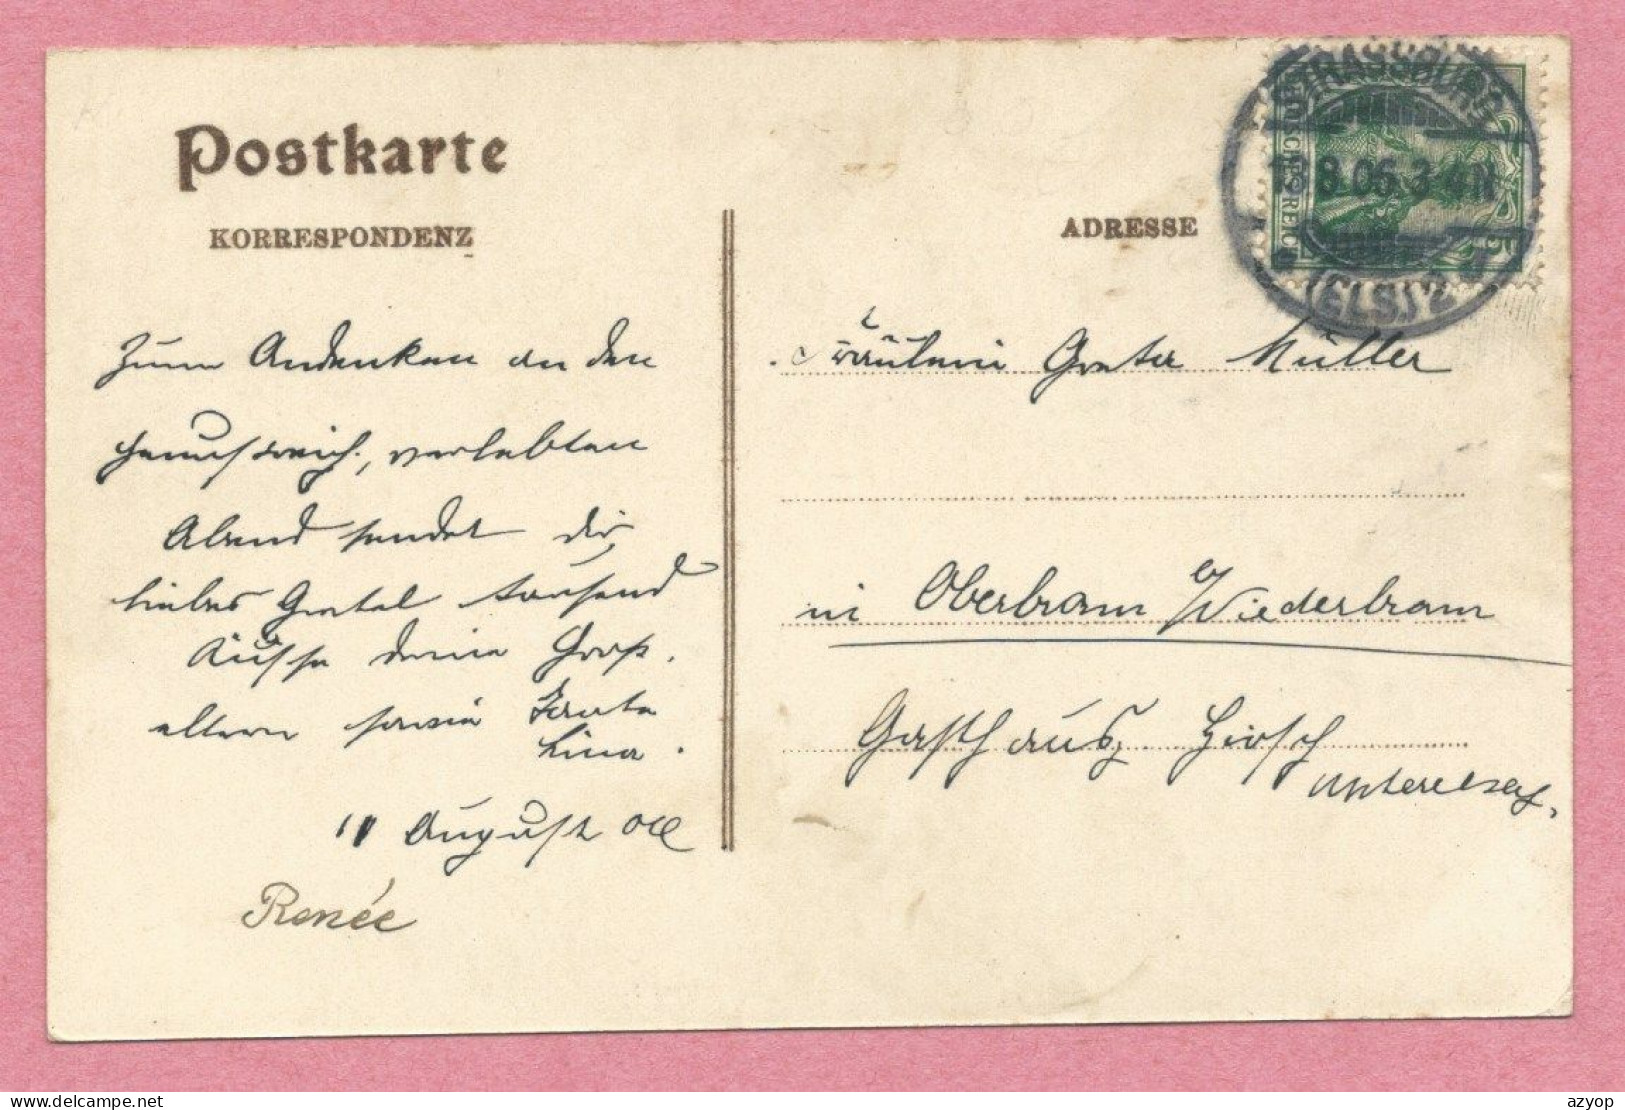 67 - STRASSBURG - STRASBOURG - Carte Signée Léo SCHNUG - Pompier De Strasbourg En 1830 - 3 Scans - Voir Texte - Strasbourg